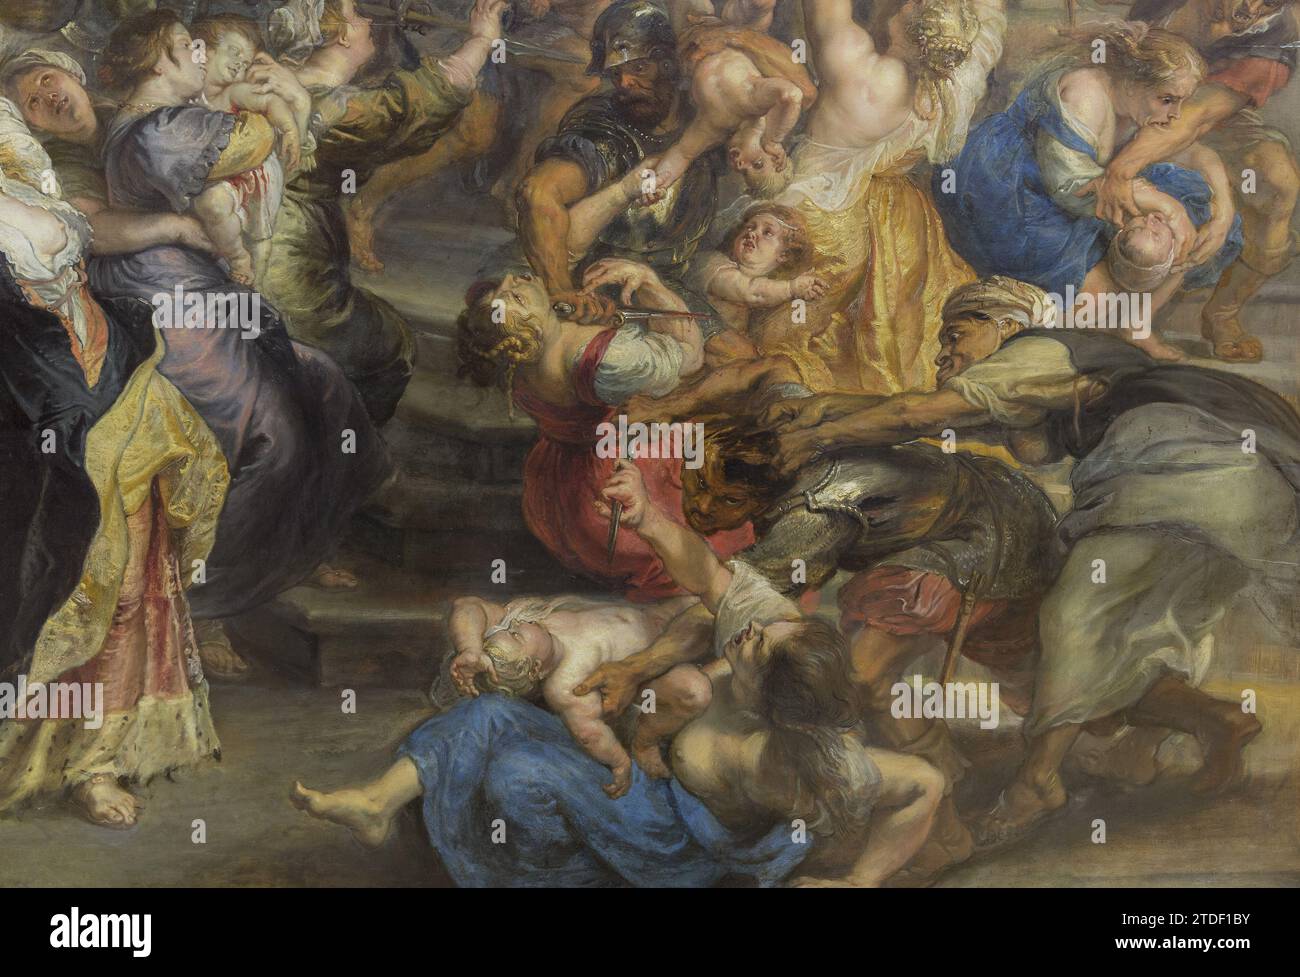 Detalle de la pintura de Rubens Foto de stock